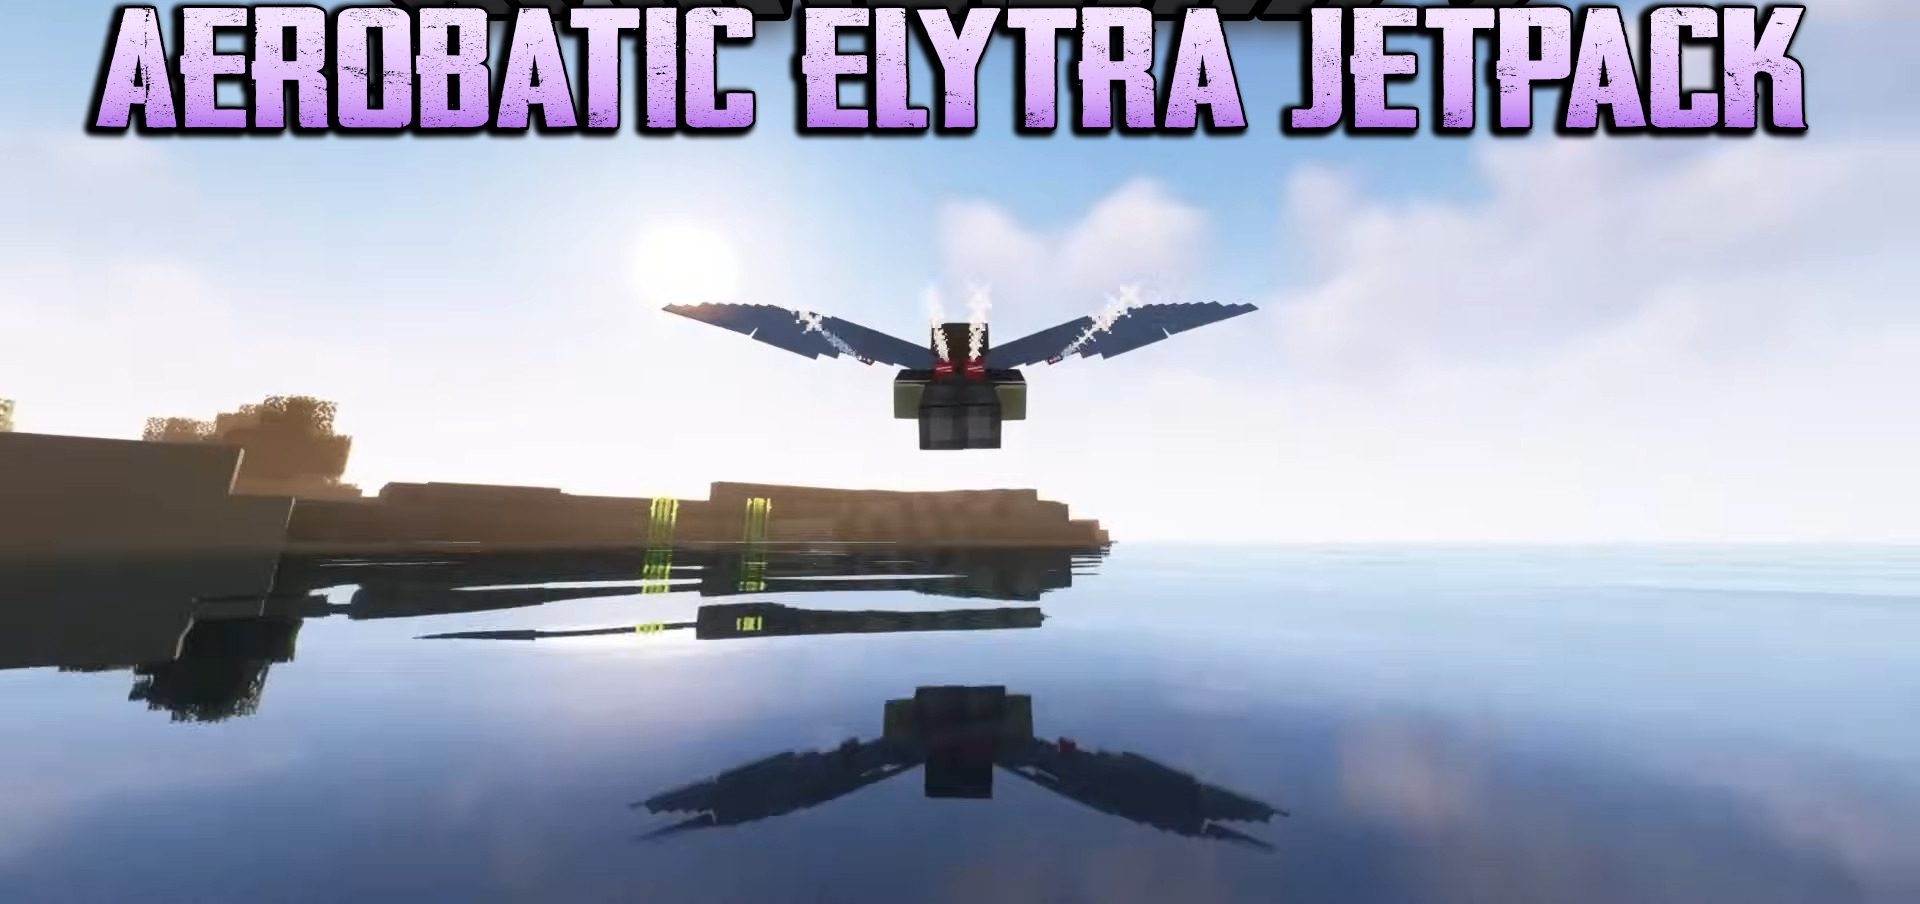 Aerobatic Elytra Jetpack screenshot 1